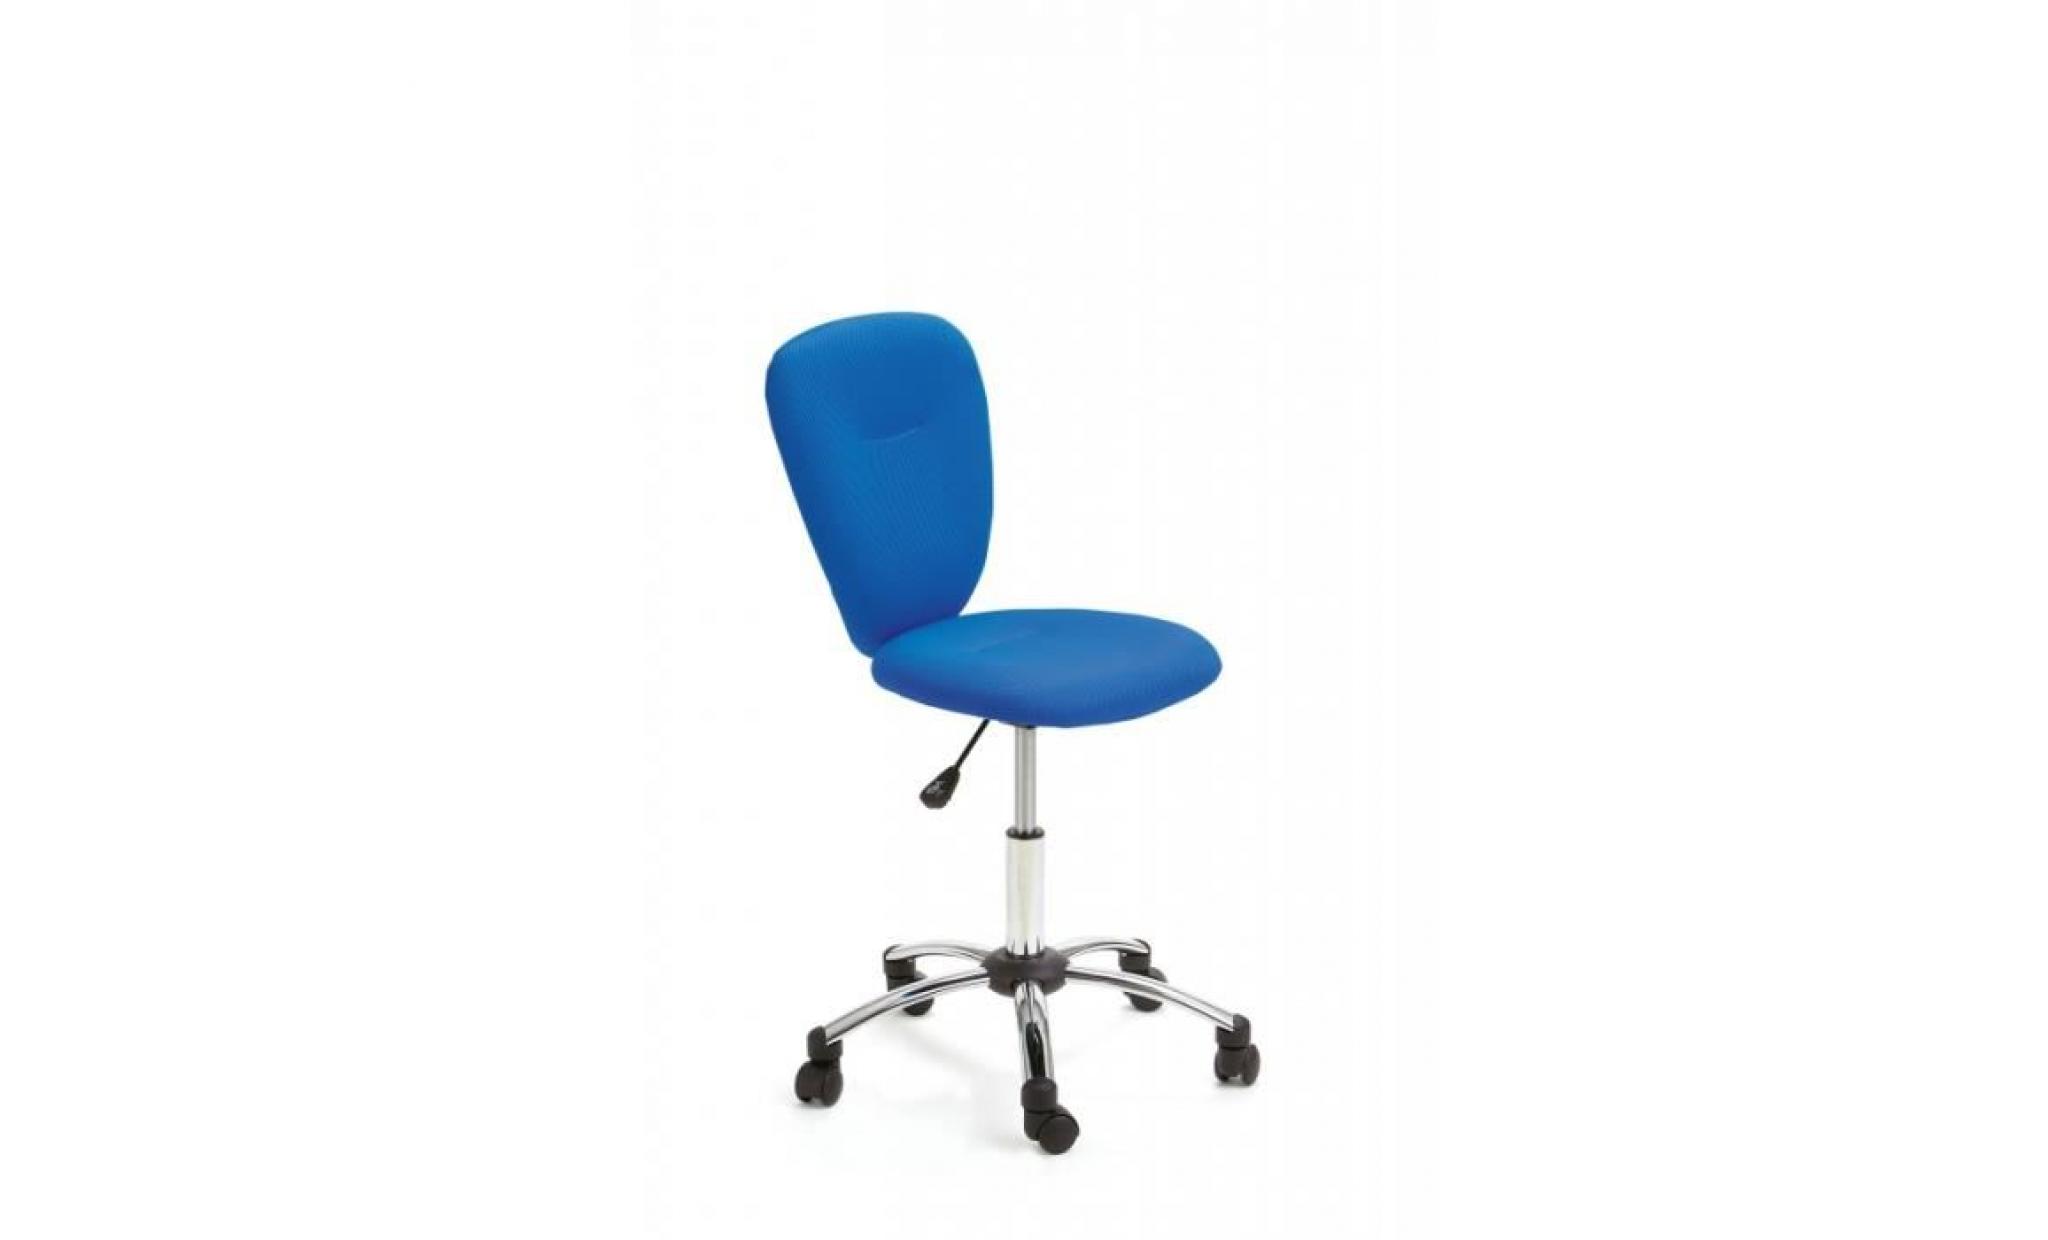 chaise pivotante mali   40 x 83 93 x 48 cm   bleu